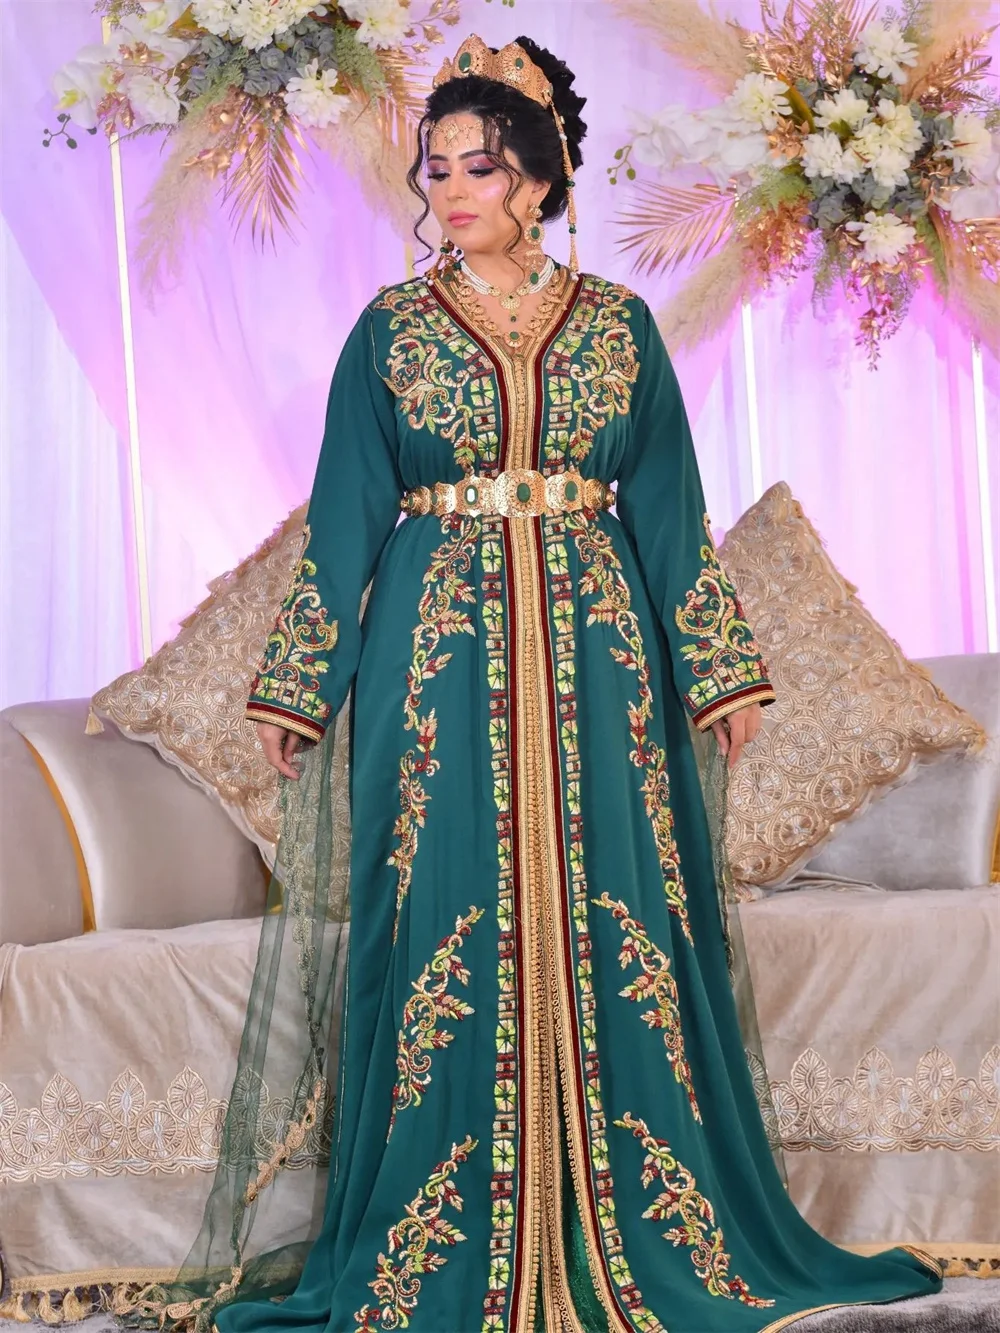 

Афганские вечерние платья с длинным рукавом, темно-синее ТРАПЕЦИЕВИДНОЕ свадебное платье, Золотая аппликация, длиной до пола, женское платье, платье для невесты